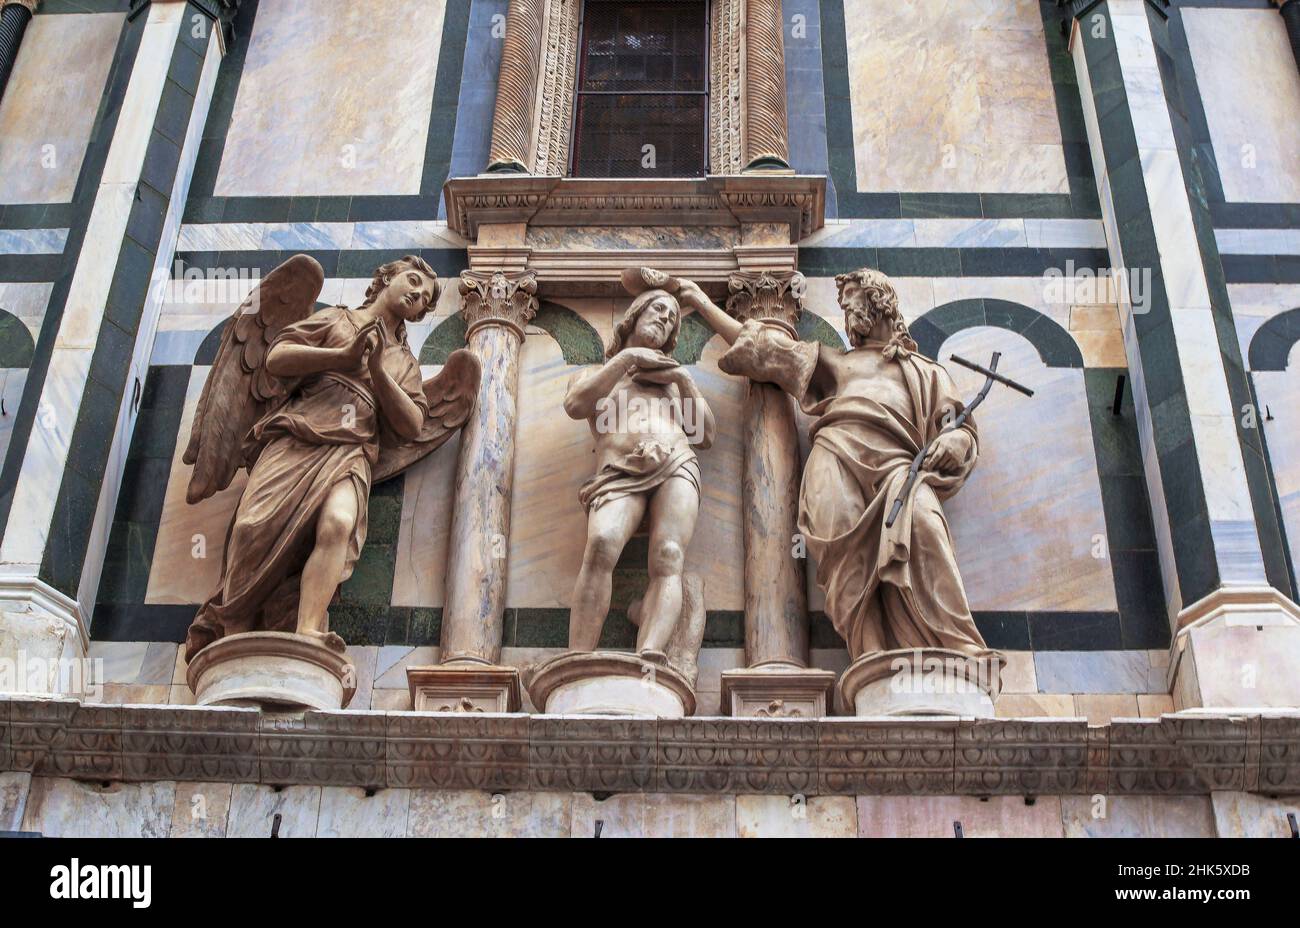 Jesus baptism scene, statues on the facade of Santa Maria del Fiore. Stock Photo